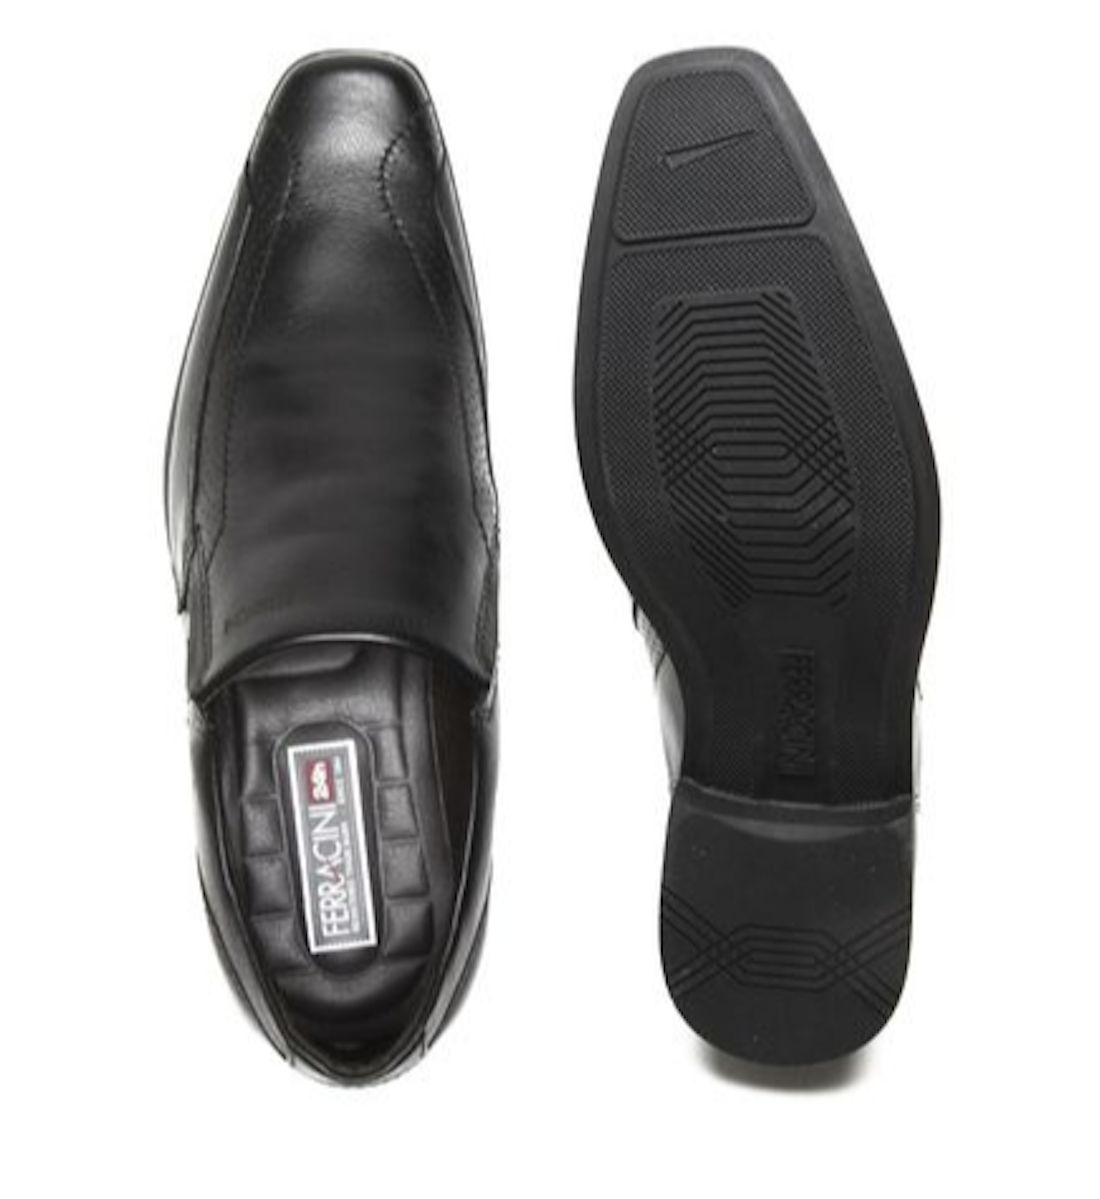 Sapato masculino de couro Ferracini Chile 5063